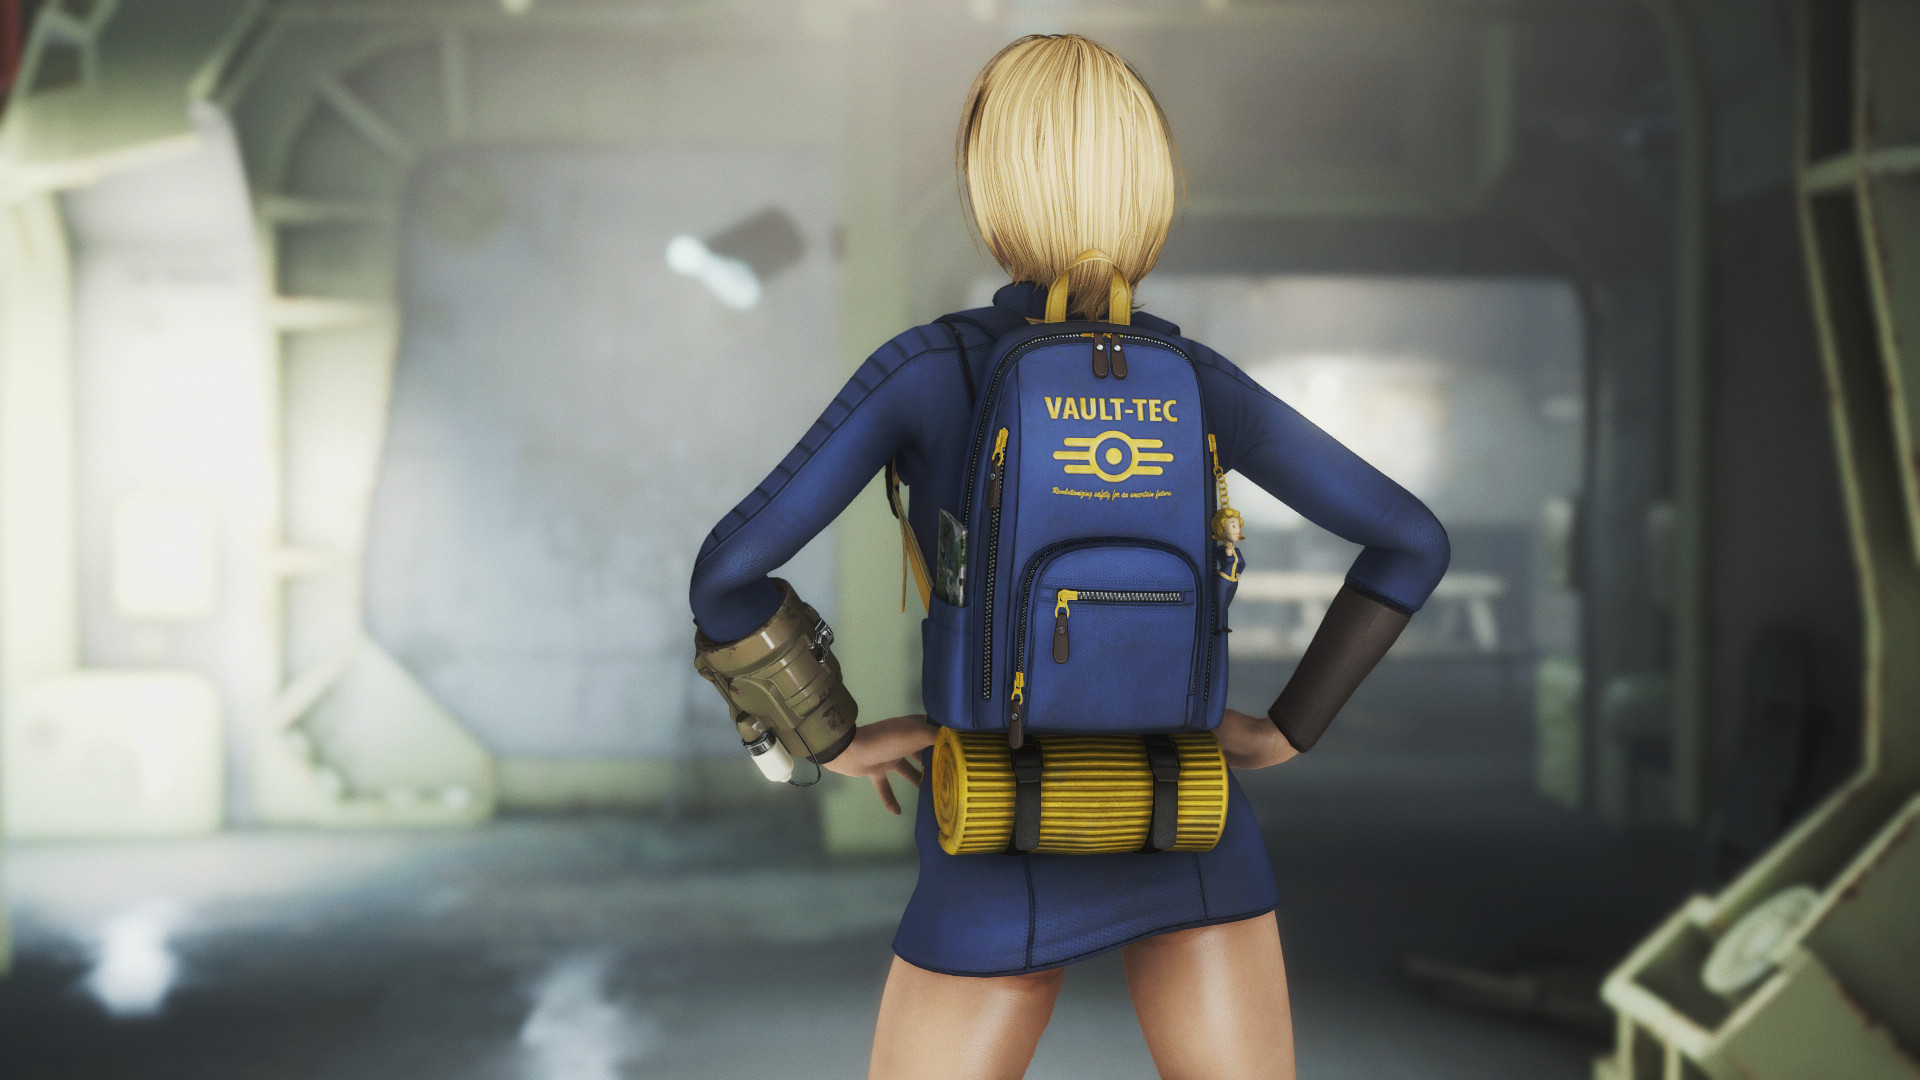 Fallout 4 dance wear your helmet фото 97